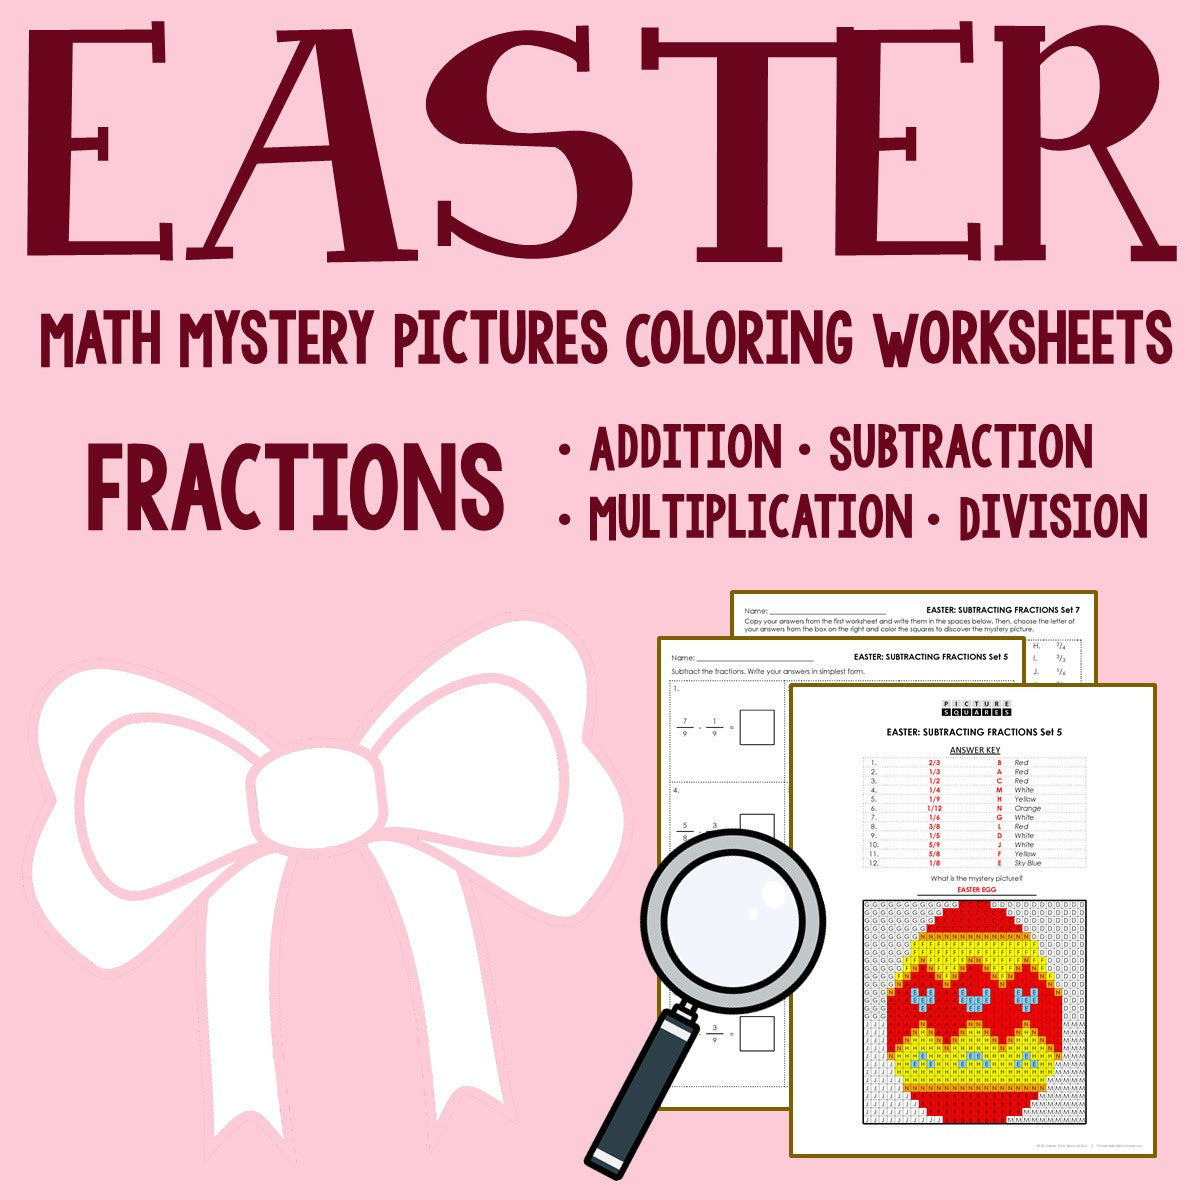 Easter Fraction Coloring Worksheets